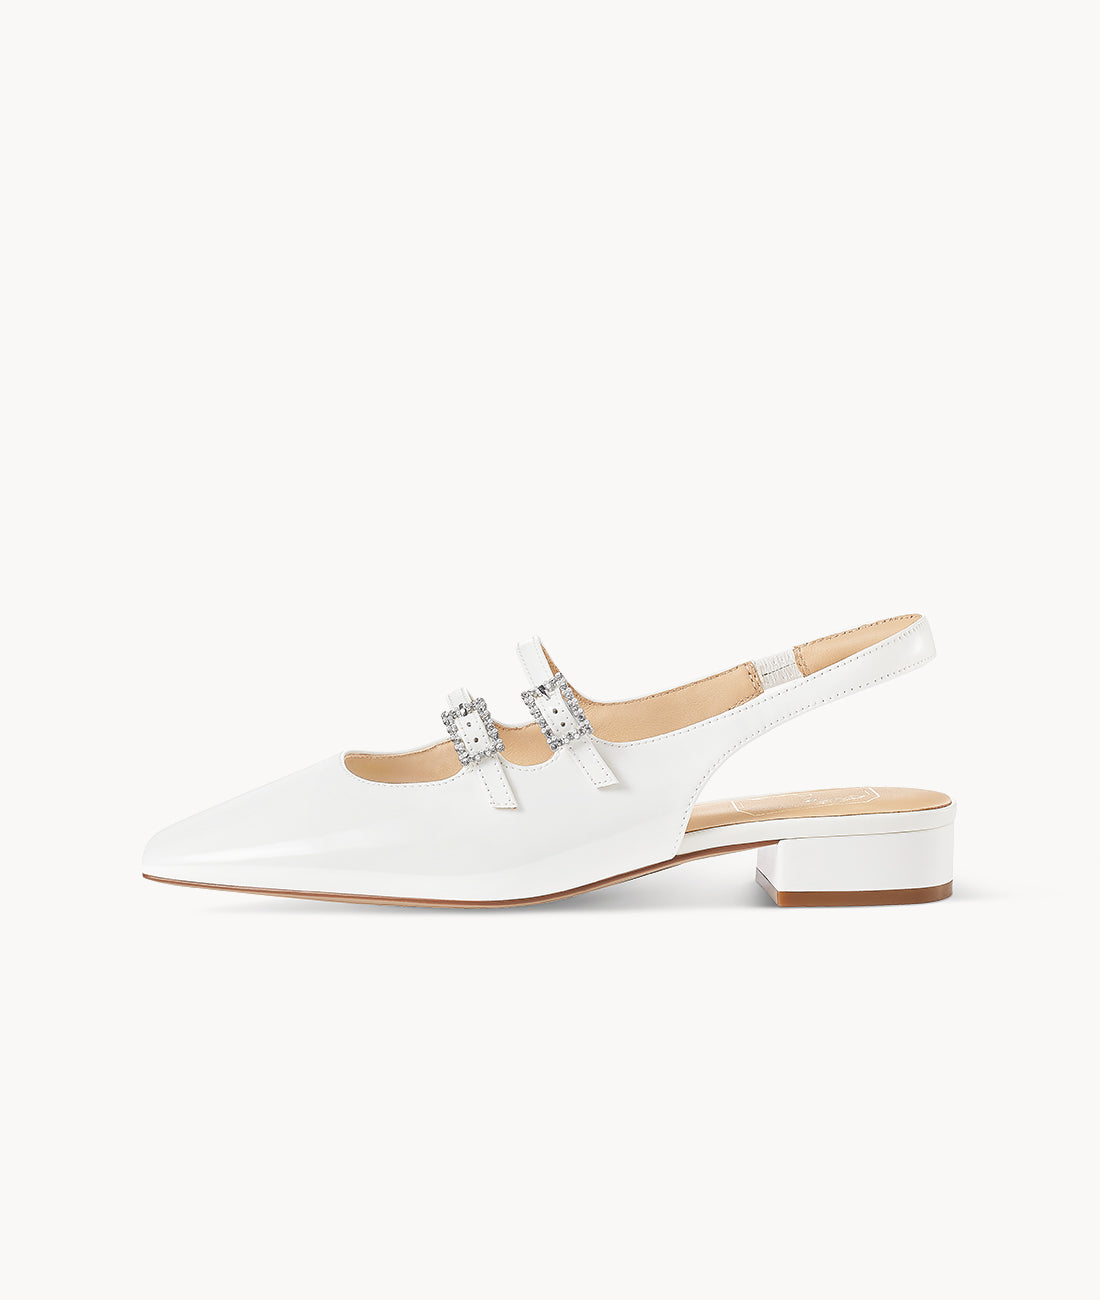 Epiphyllum Mary Jane-Square-toe white Slingback Flat with 25mm heel